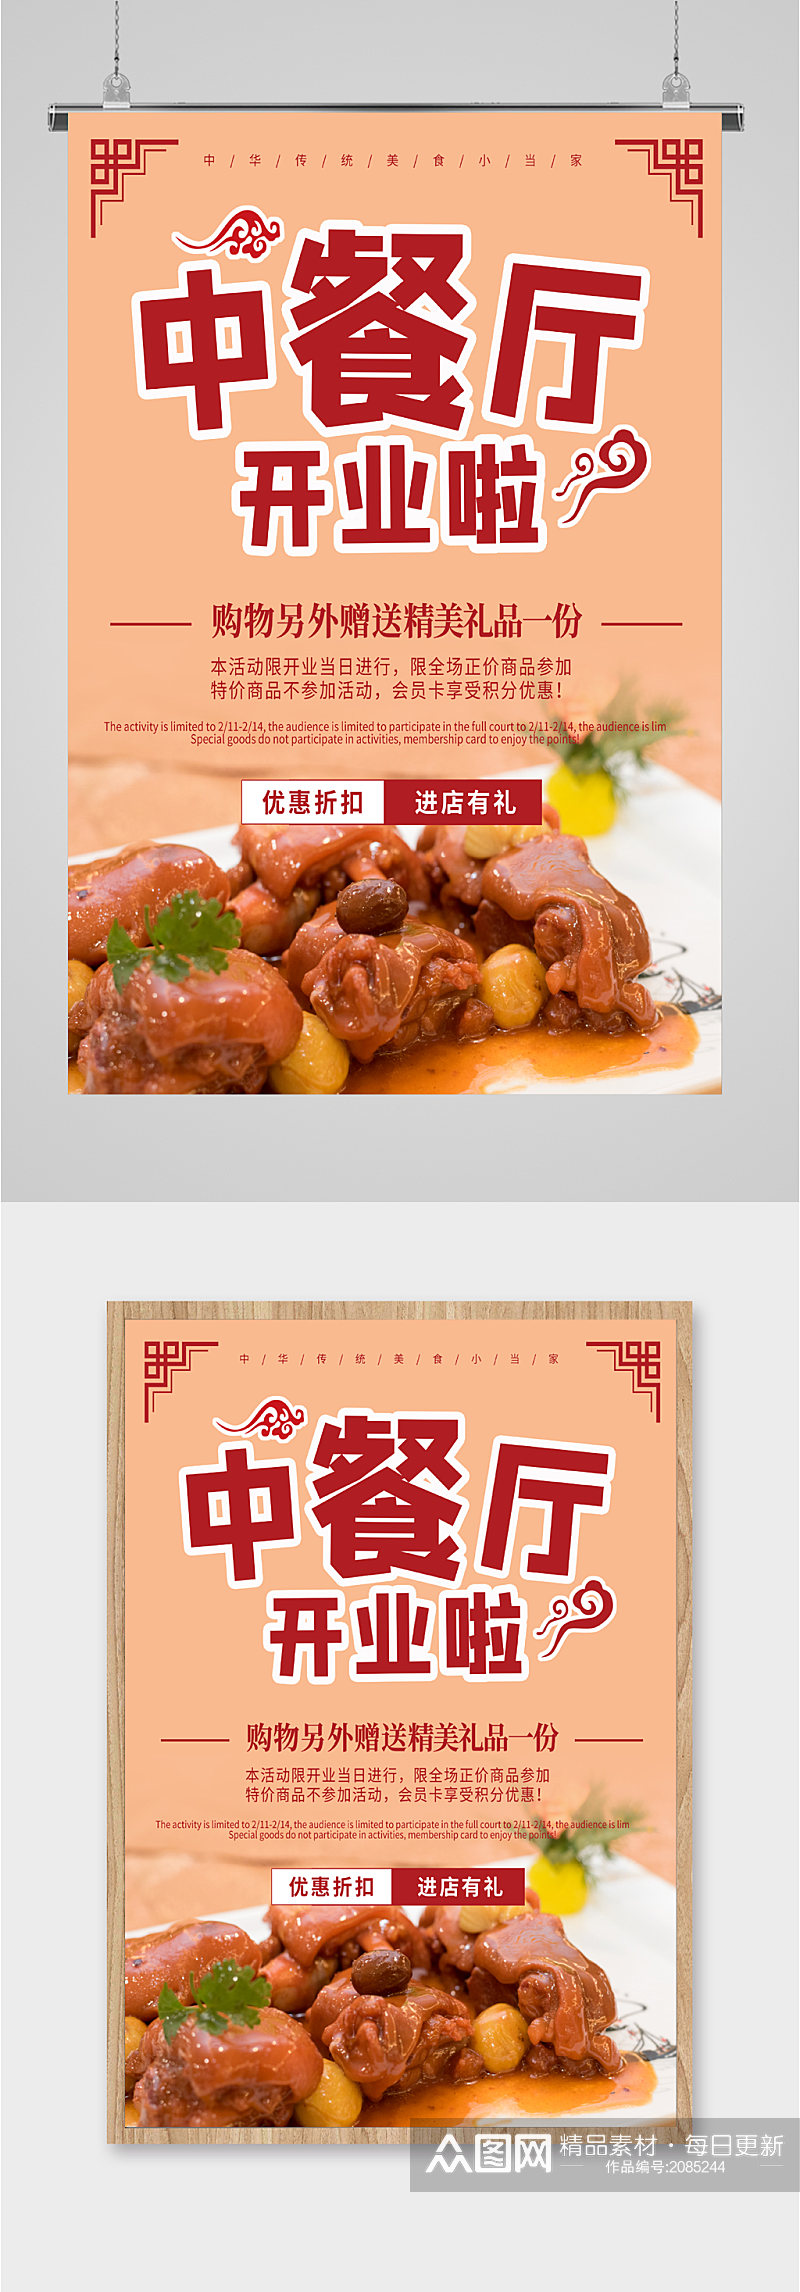 中餐厅开业活动海报素材